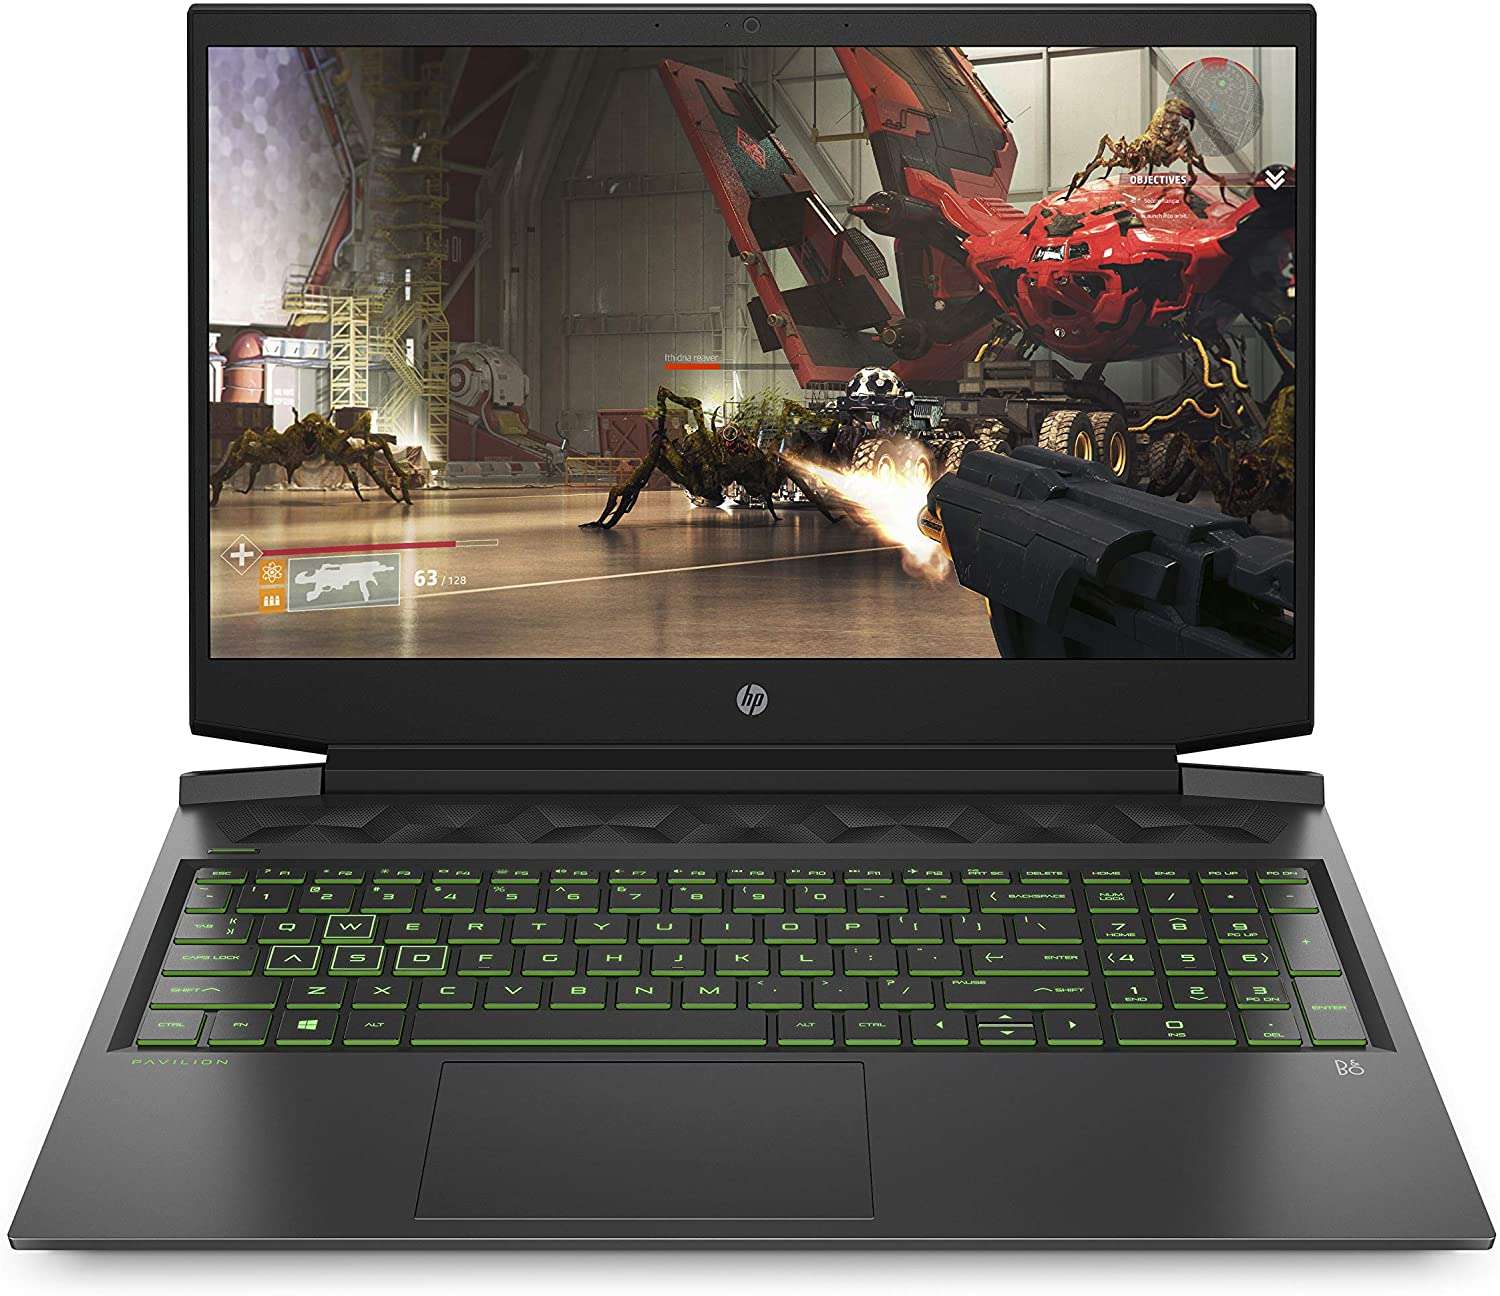 Fnac : 38% de réduction sur le PC portable gamer HP Pavilion - Le Parisien